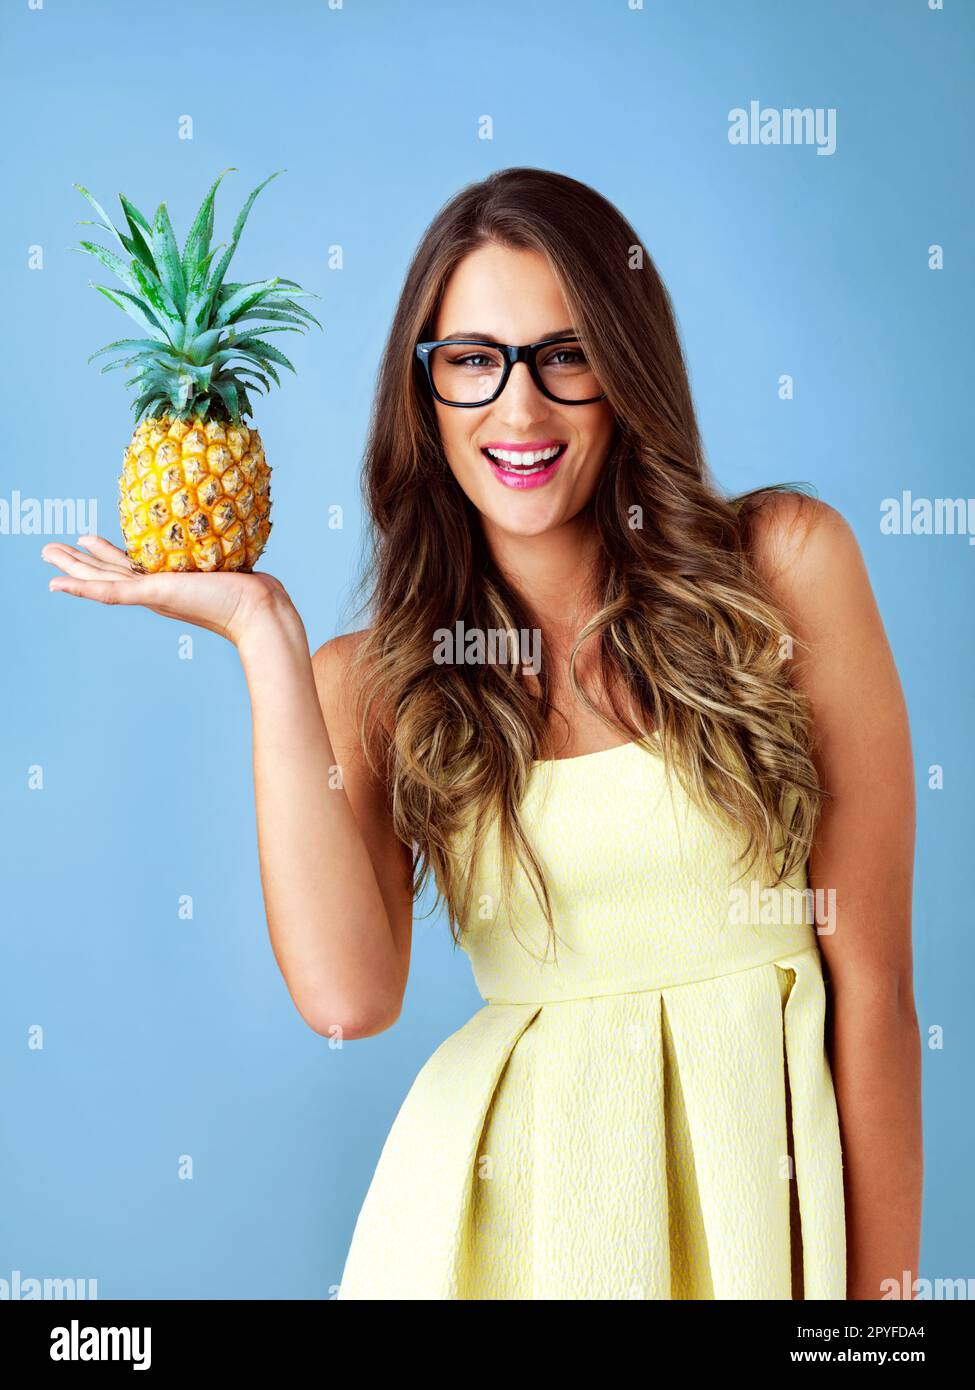 Il est très piquant à l'extérieur mais doux à l'intérieur. Photo studio d'une jeune femme tenant un ananas sur fond bleu. Banque D'Images